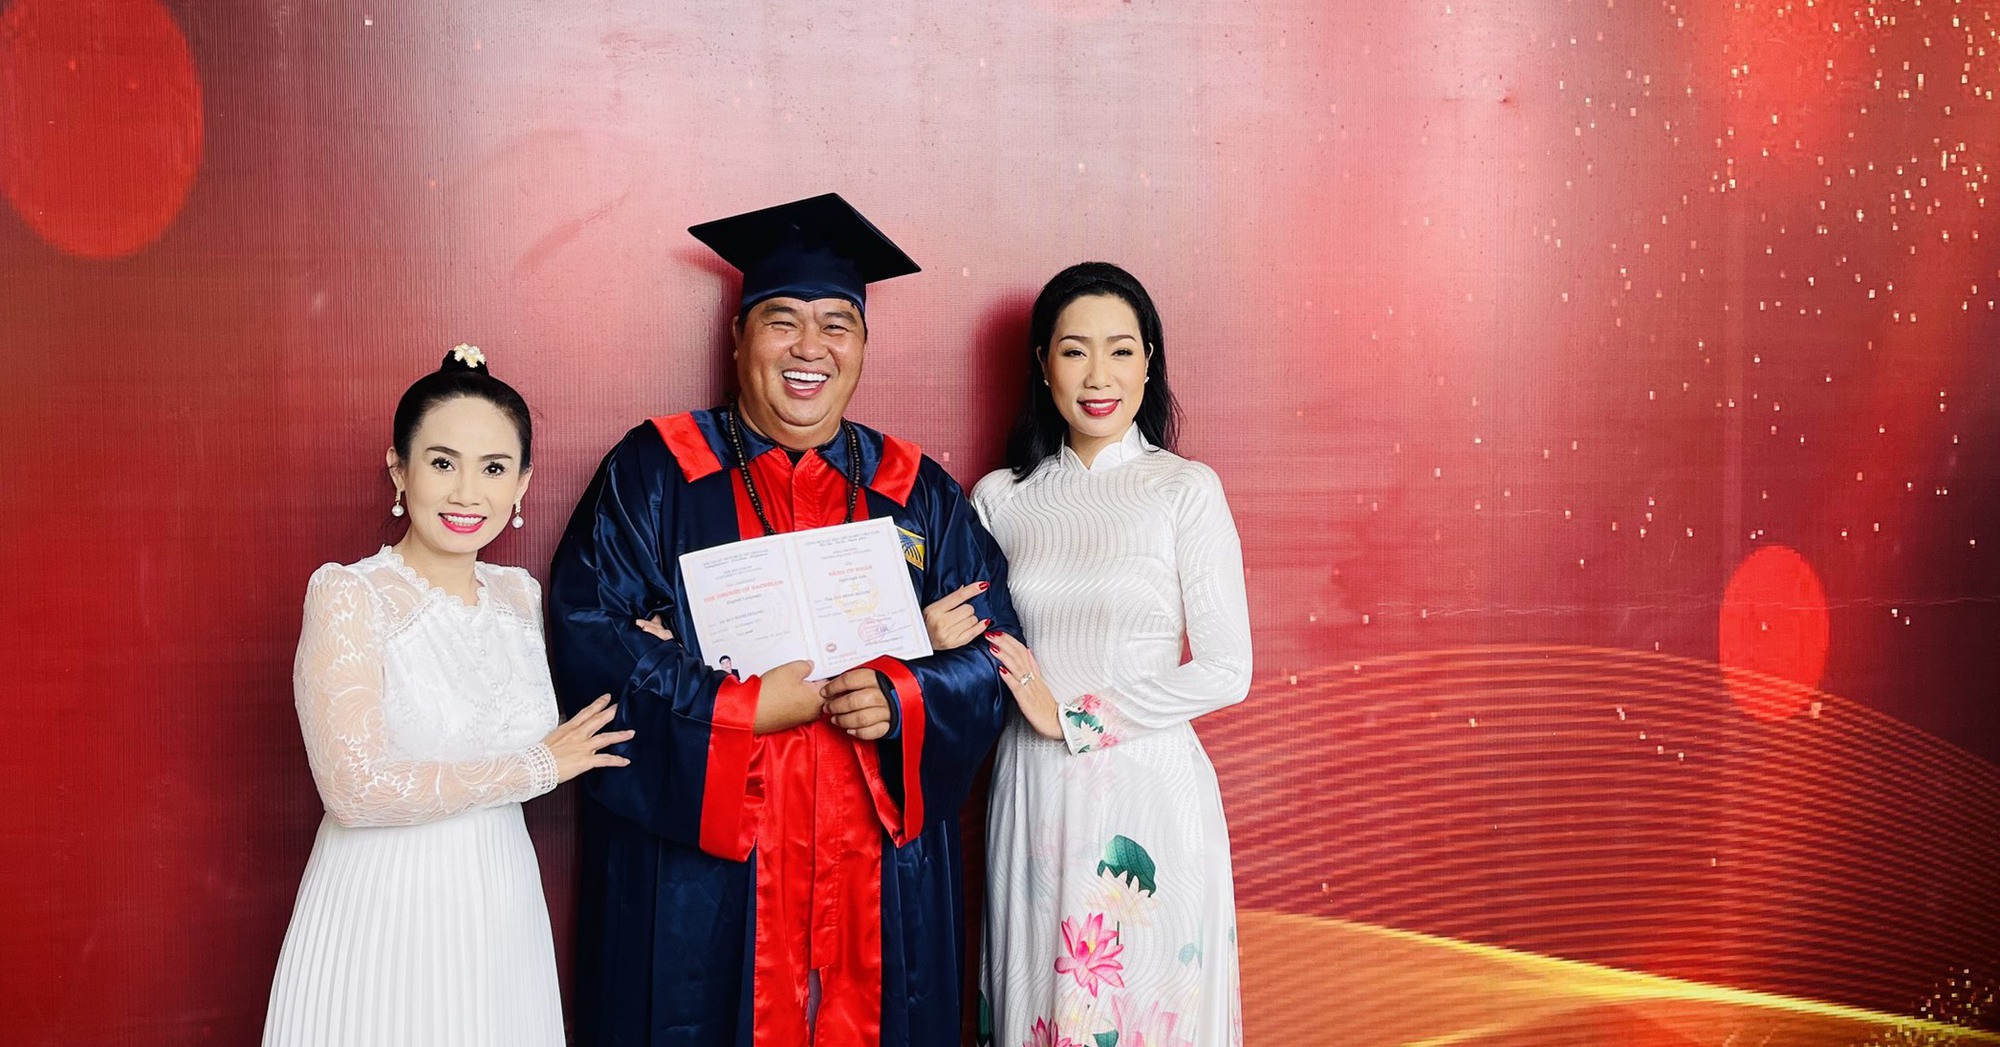 Hoàng Mập: Học đại học ở tuổi 51 khiến tôi vô cùng e ngại